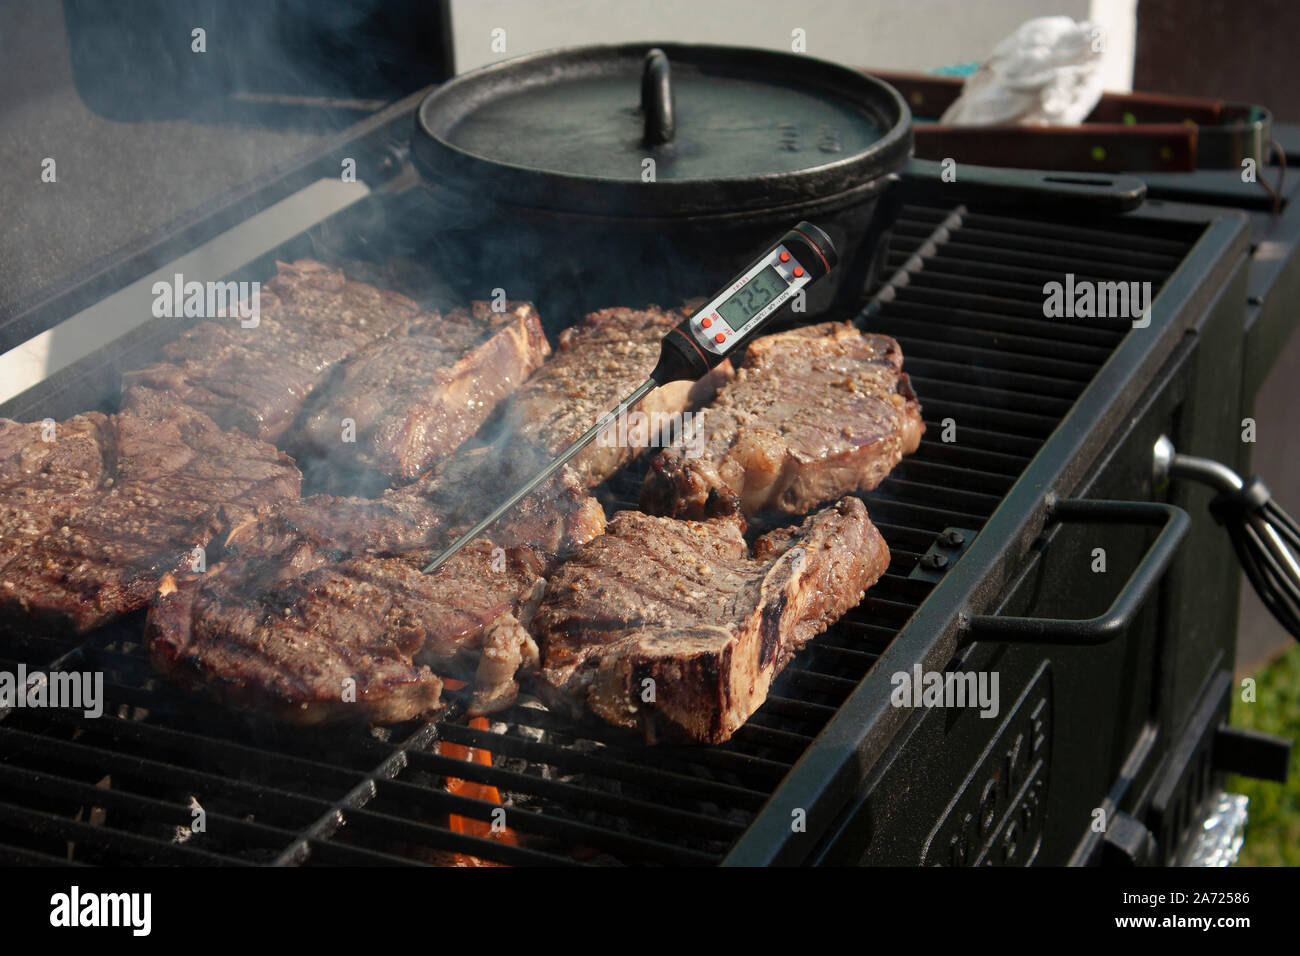 La cuisson des viandes sur le grill en utilisant des outils de spécialité gastronomique avec le thermomètre à soixante-cinq point cinq degrés Celsius Banque D'Images